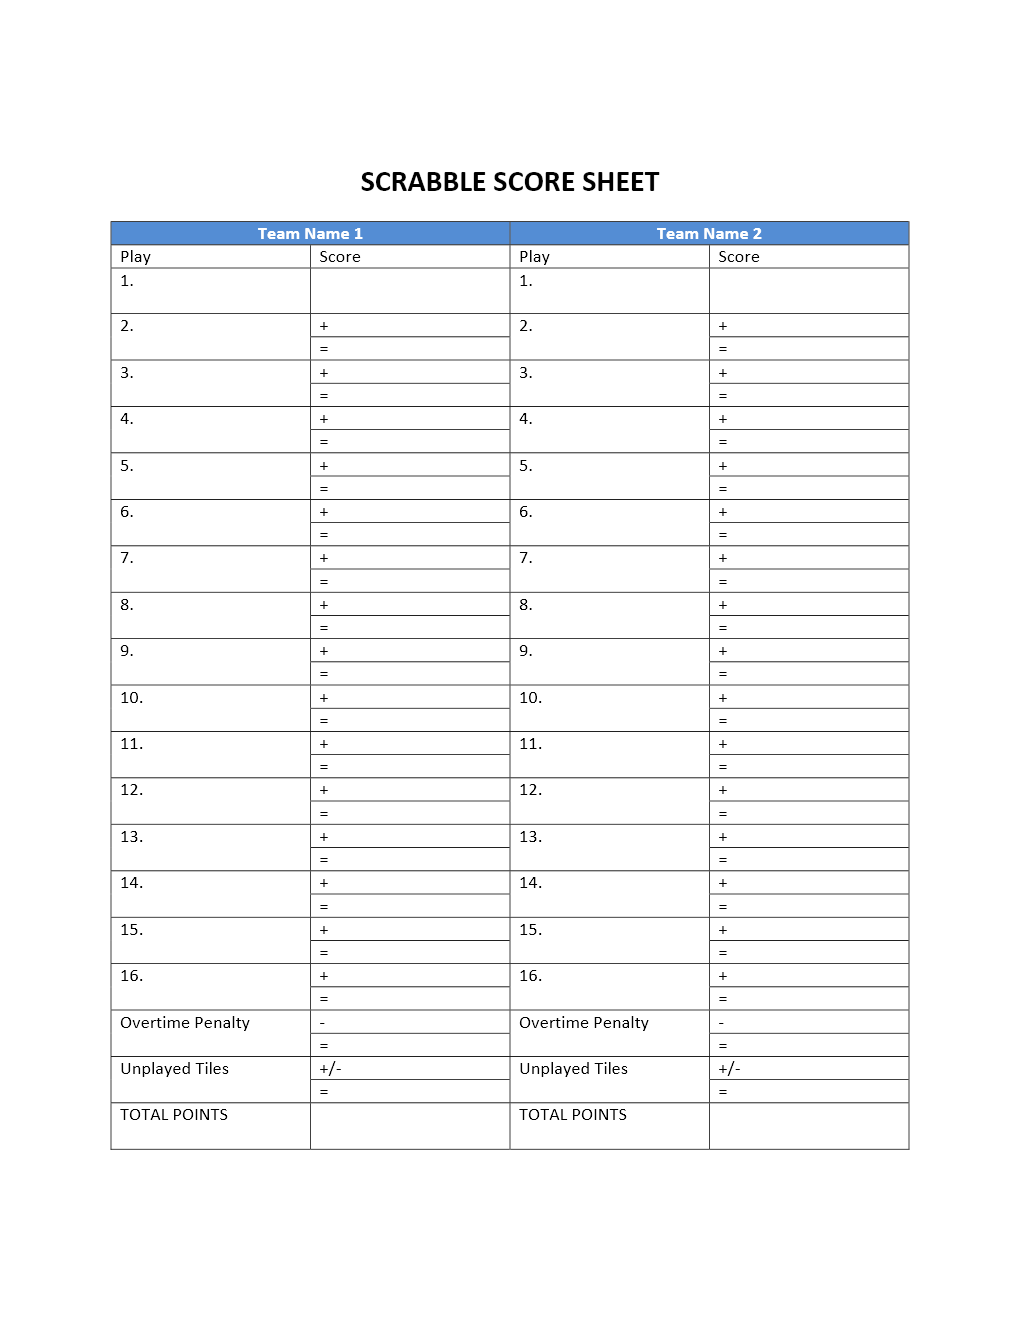 scrabble-score-sheet